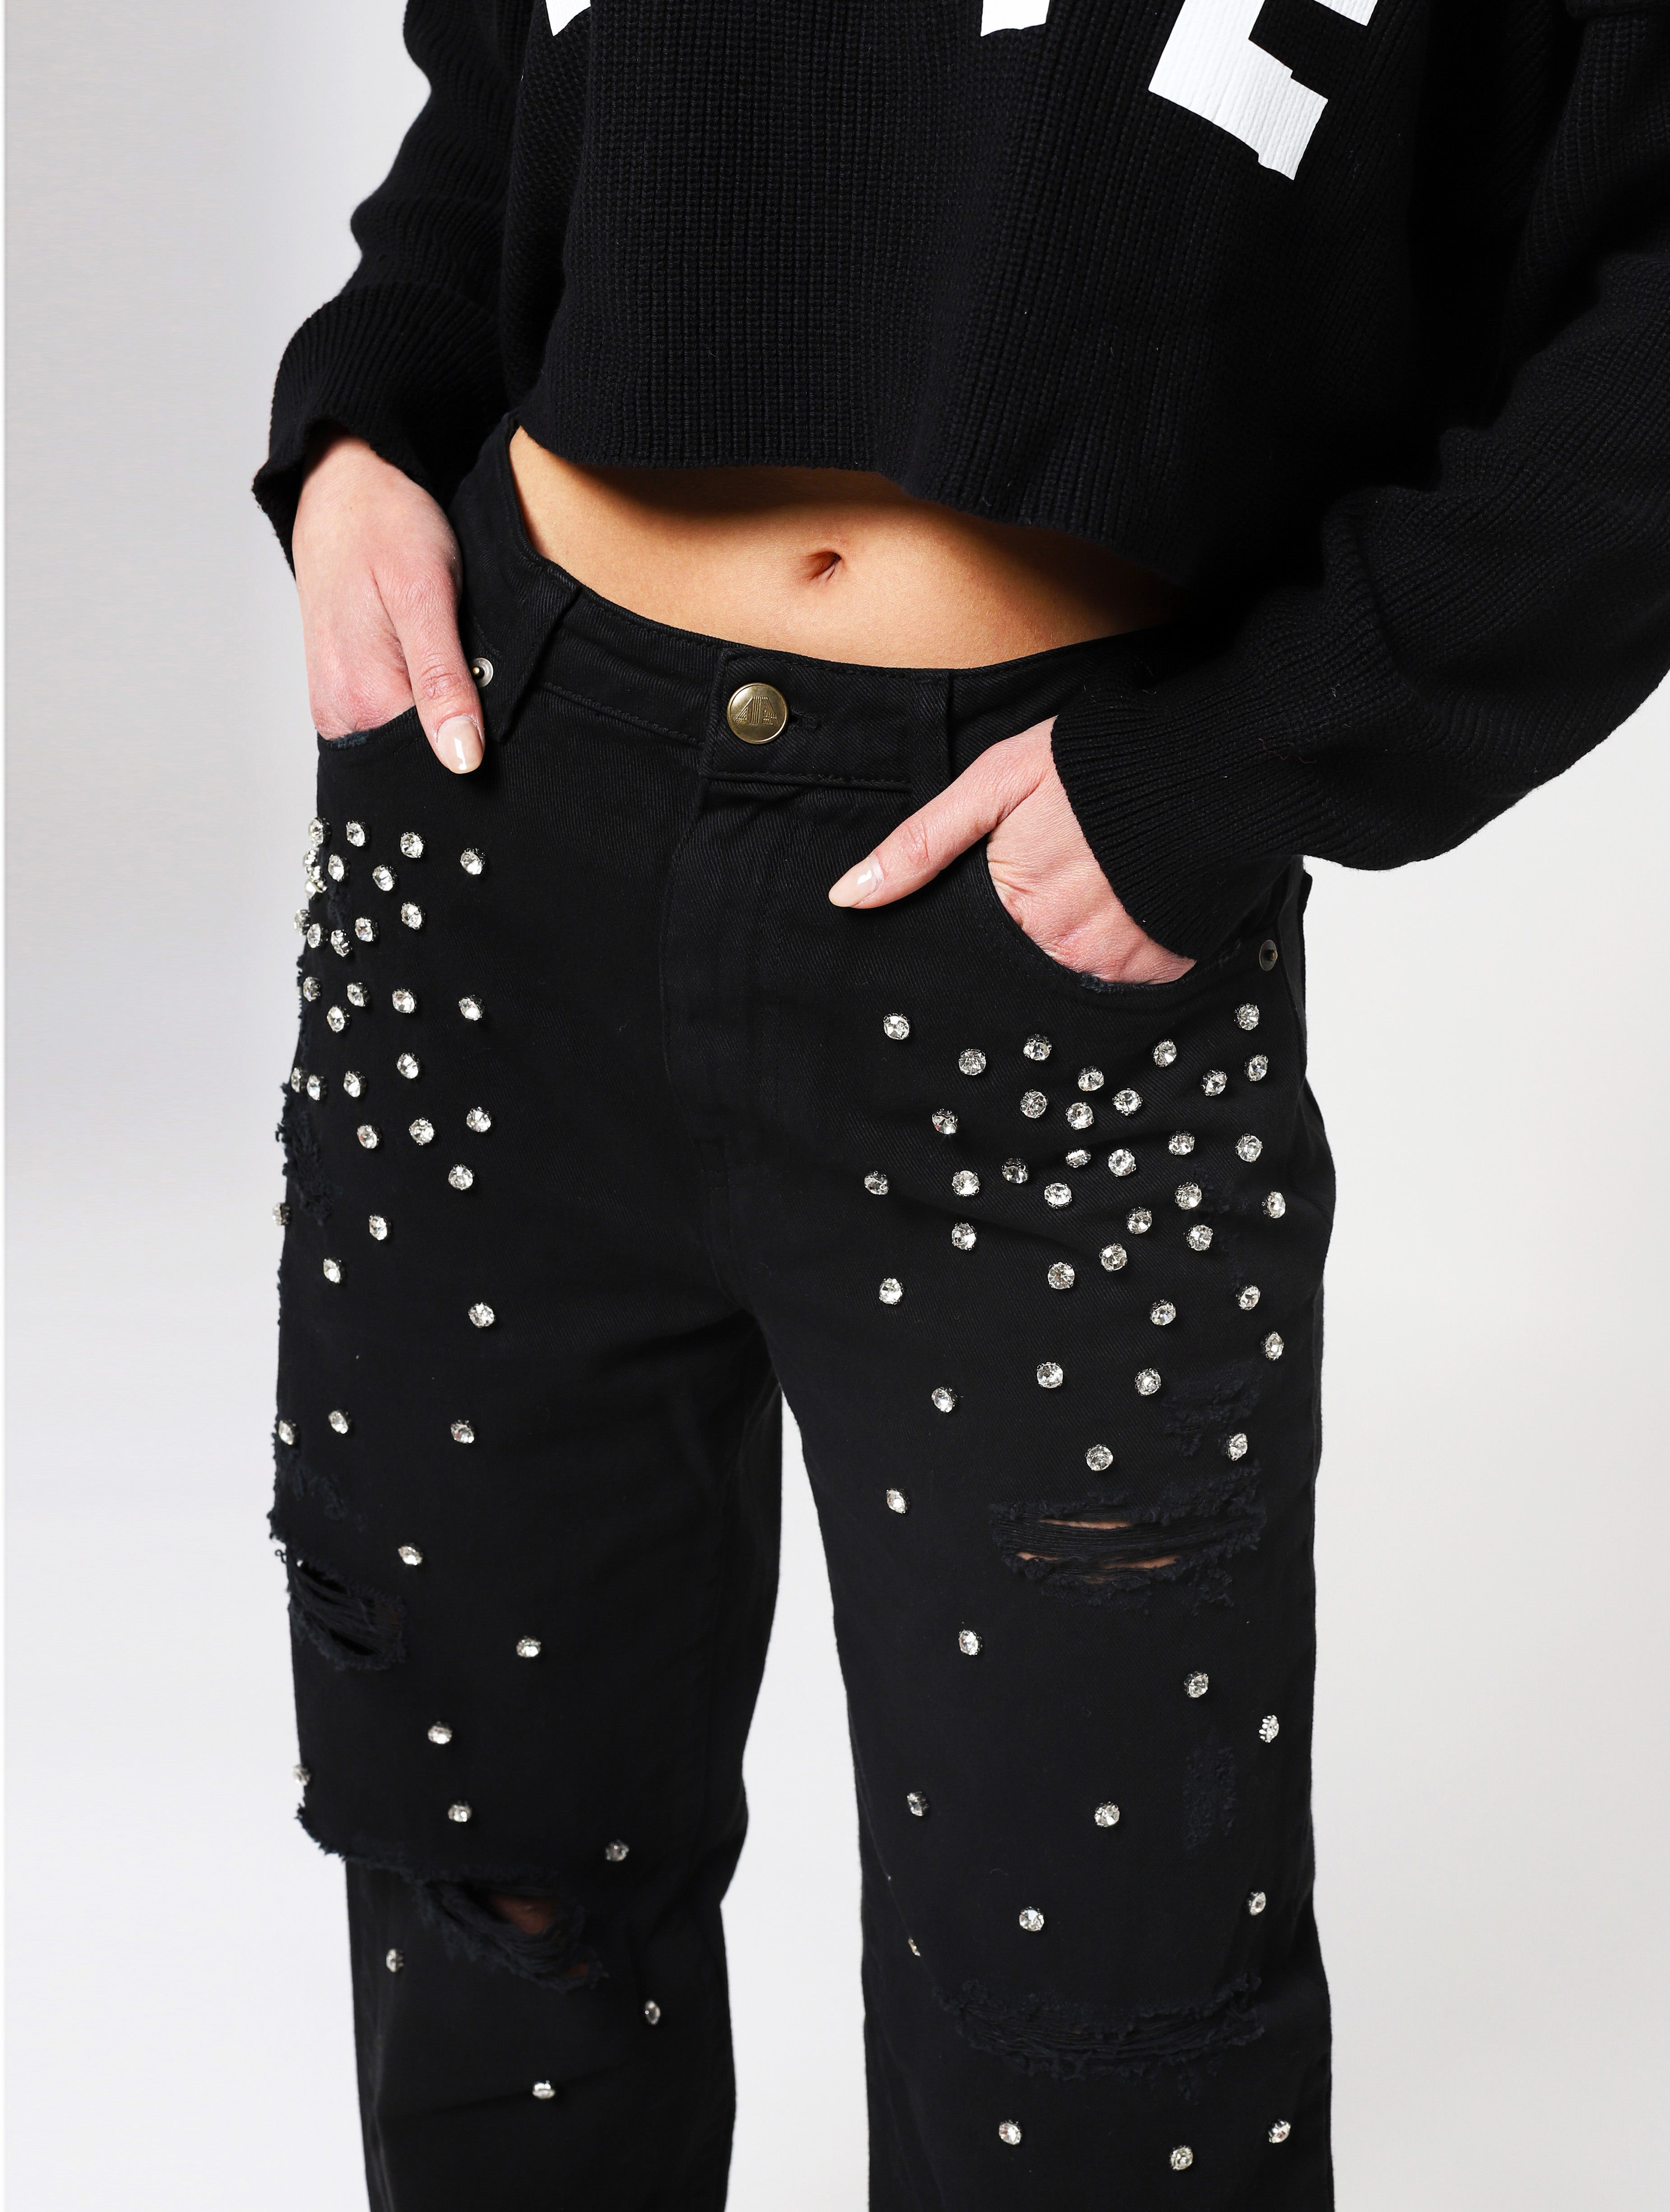 Jeans con 5 tasche, gioielli applicati e lacerazioni sulla parte frontale del pantalone, patch applicata posteriore piccola con nome del brand - nero woman  - 1